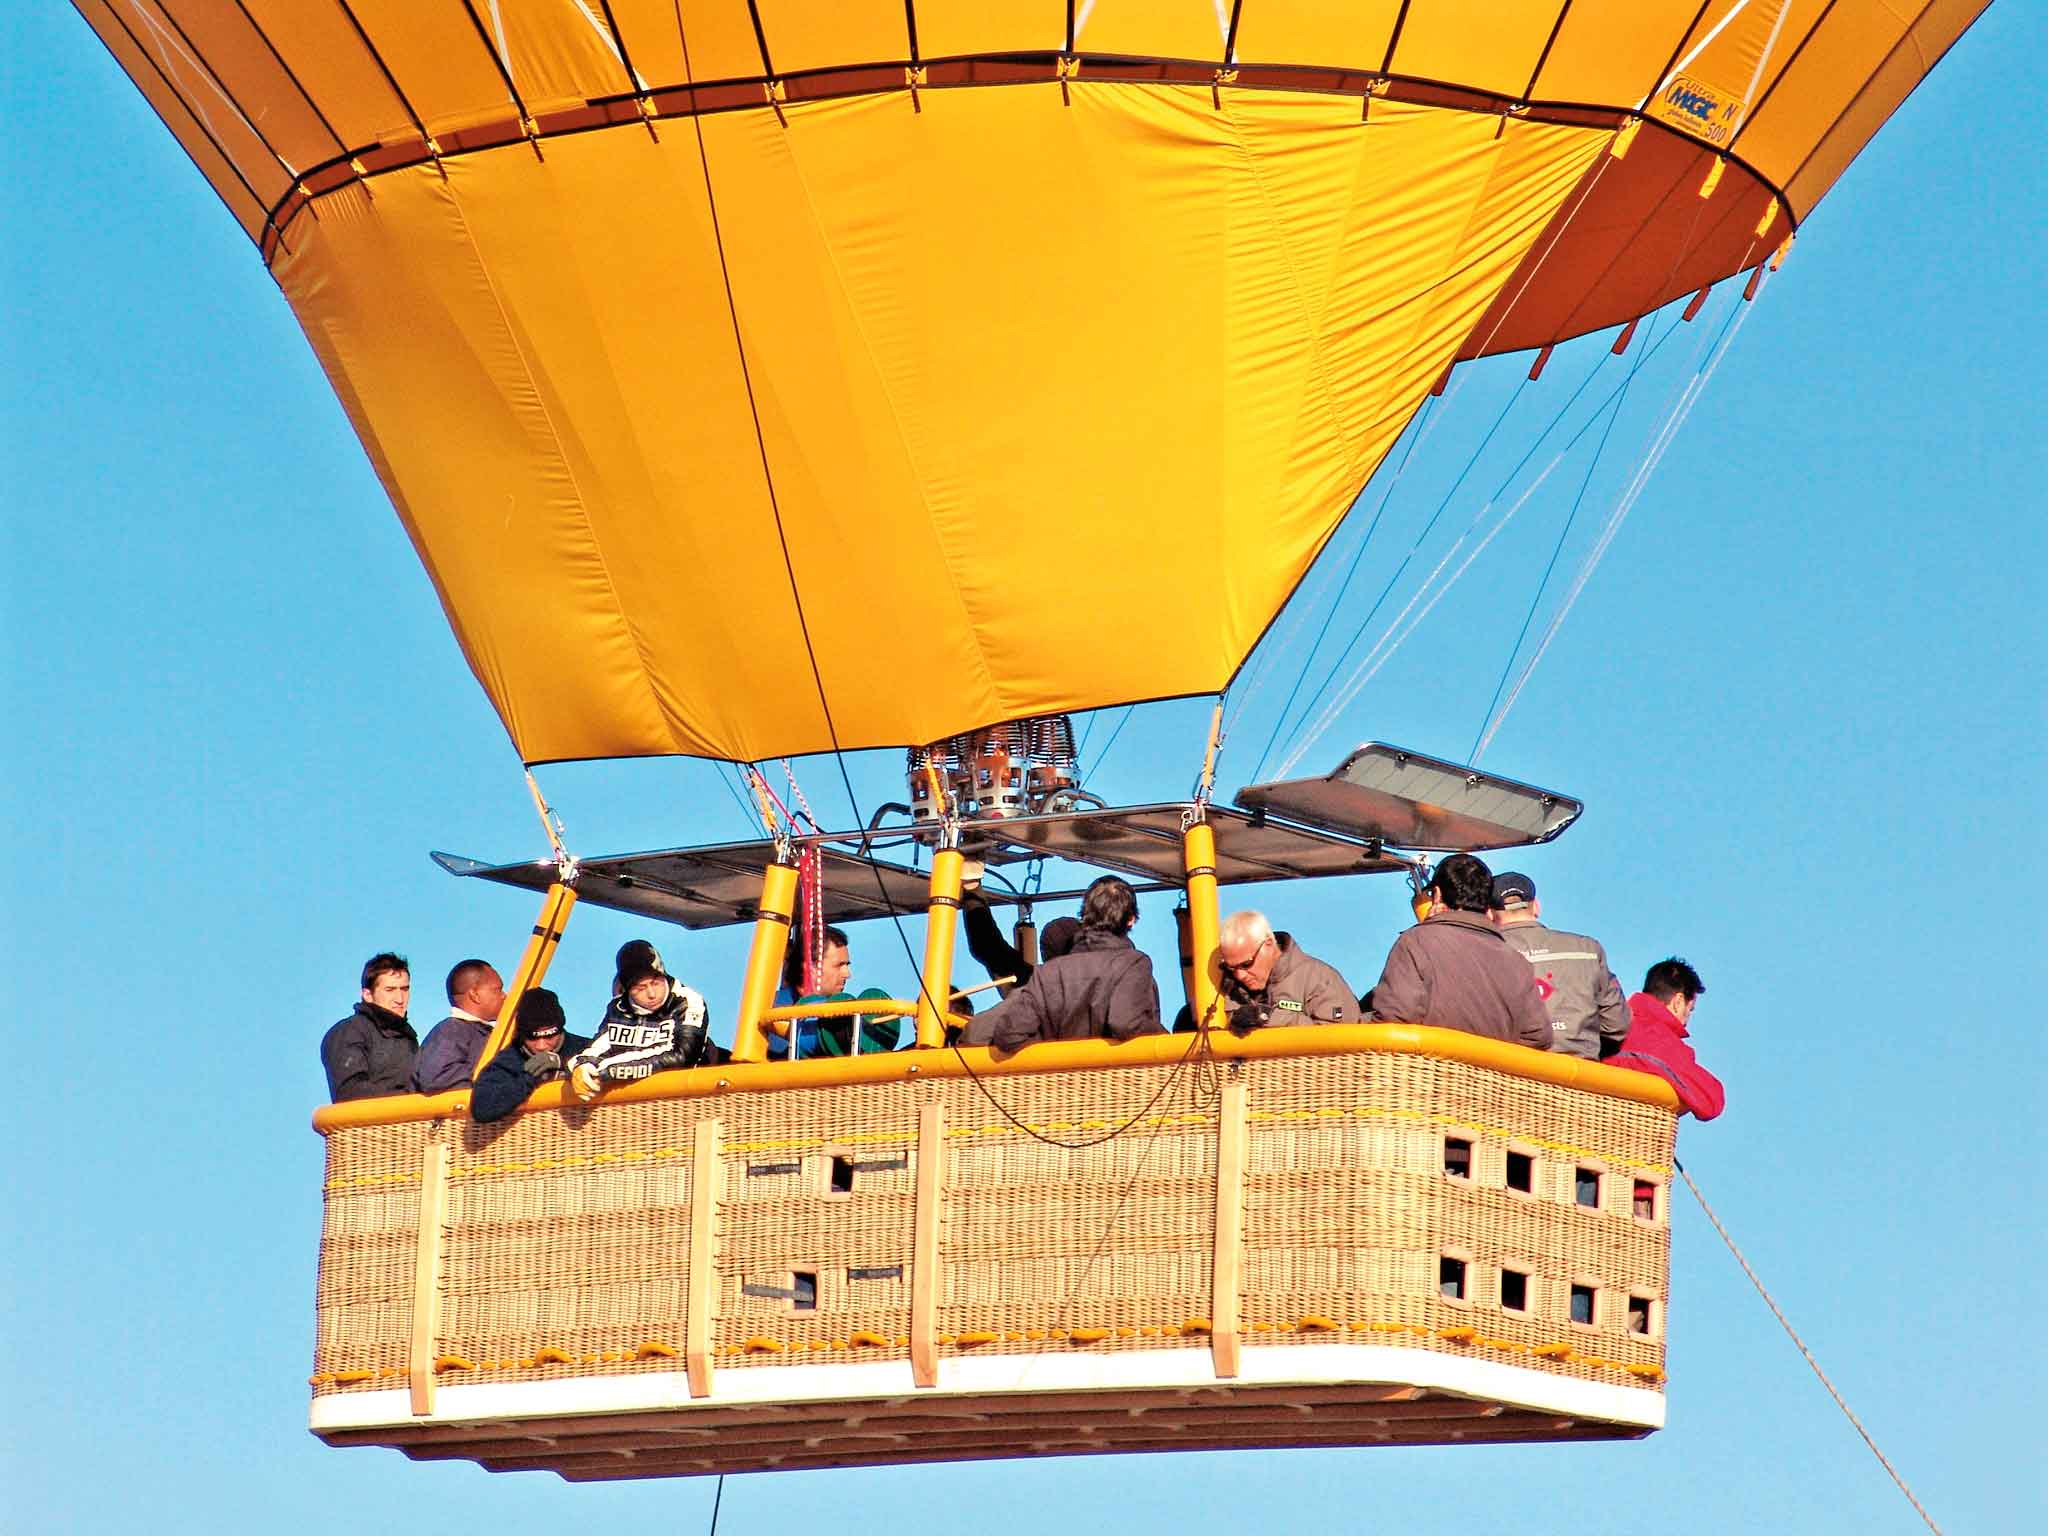 Hot air balloon basket